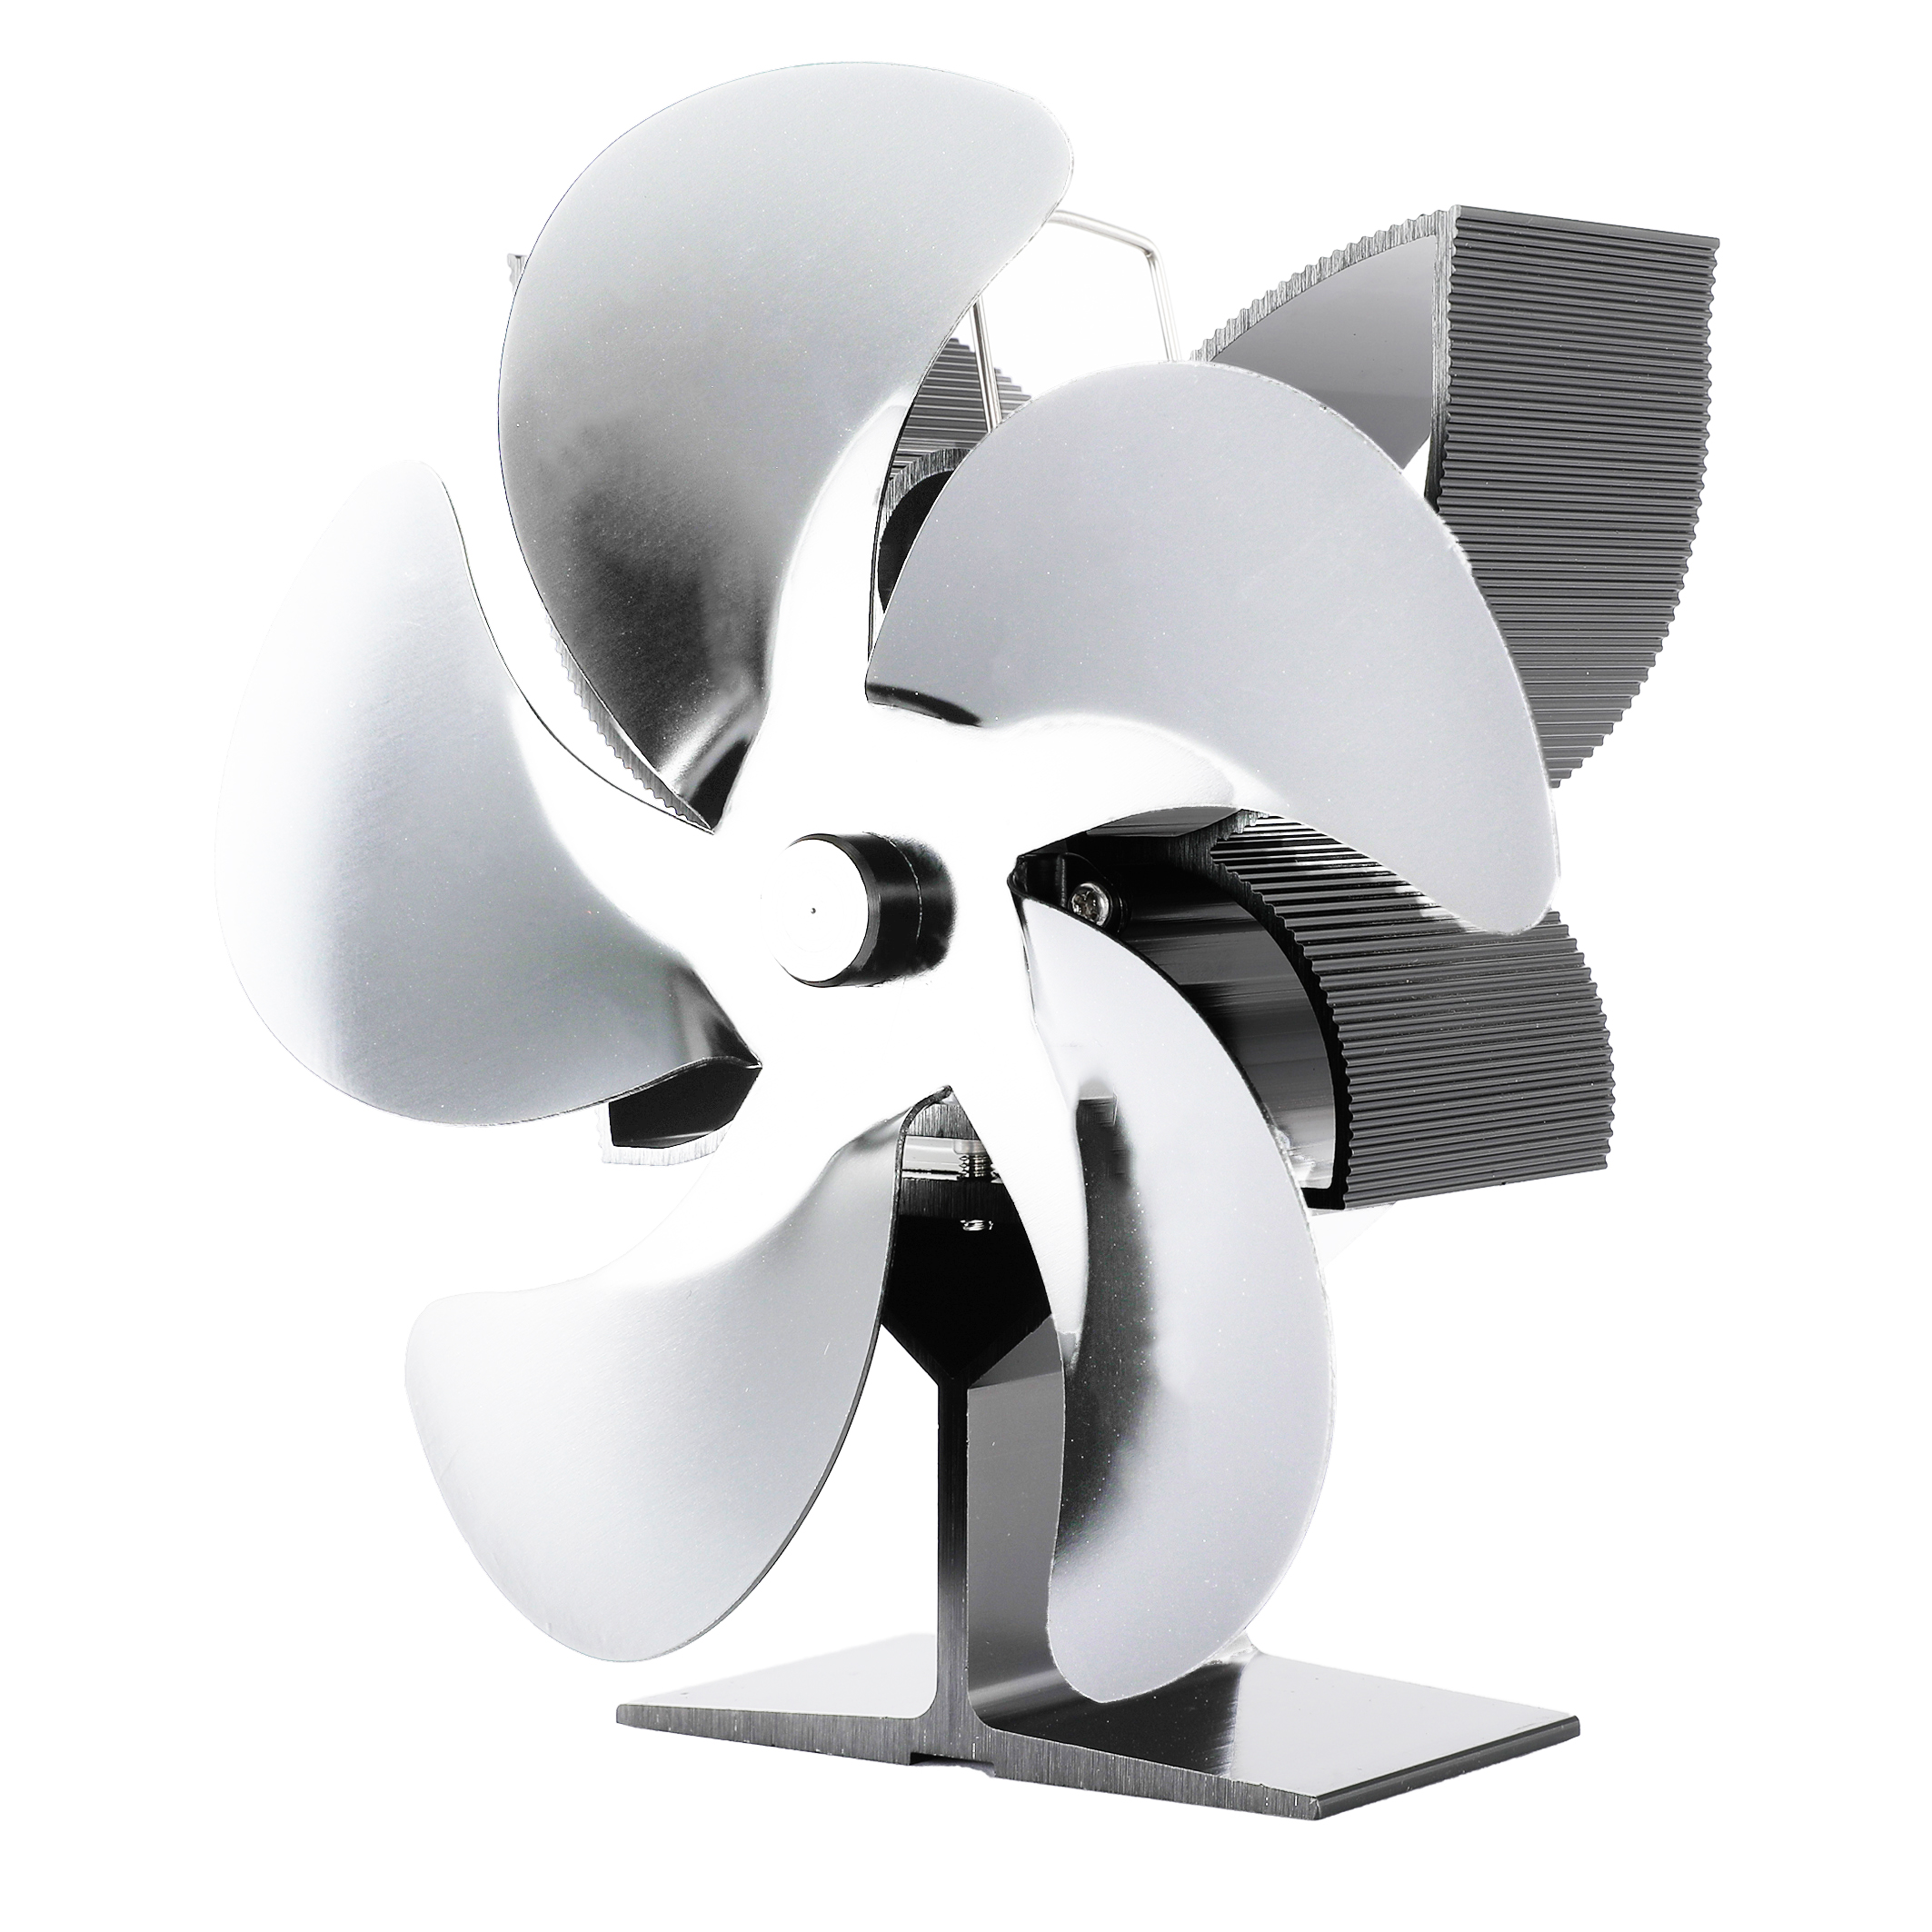 SF902S-5-Blades-Fireplace-Fan-Eco-Friendly-Quiet-Wood-Burner-Stove-Fan-Thermal-Heat-Power-Fan-Home-C-1764137-8